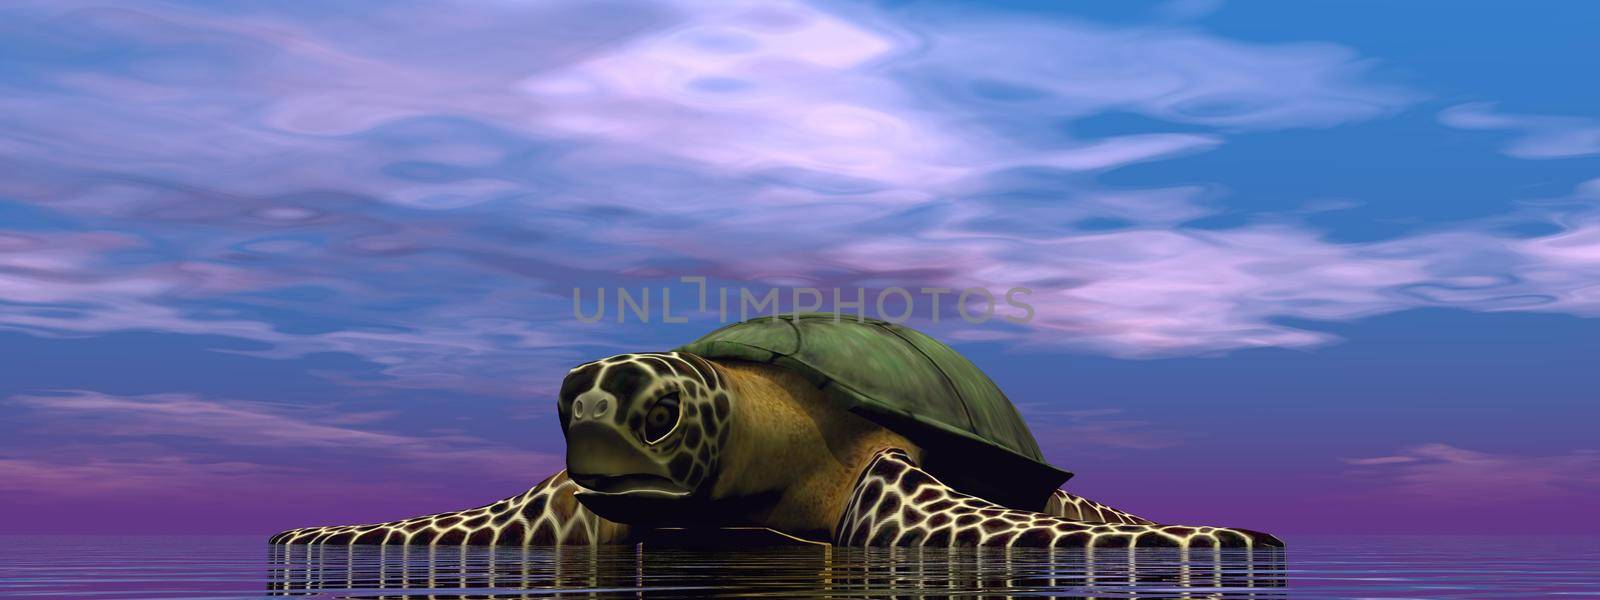 brown turtle in the ocean - 3d rendering by mariephotos